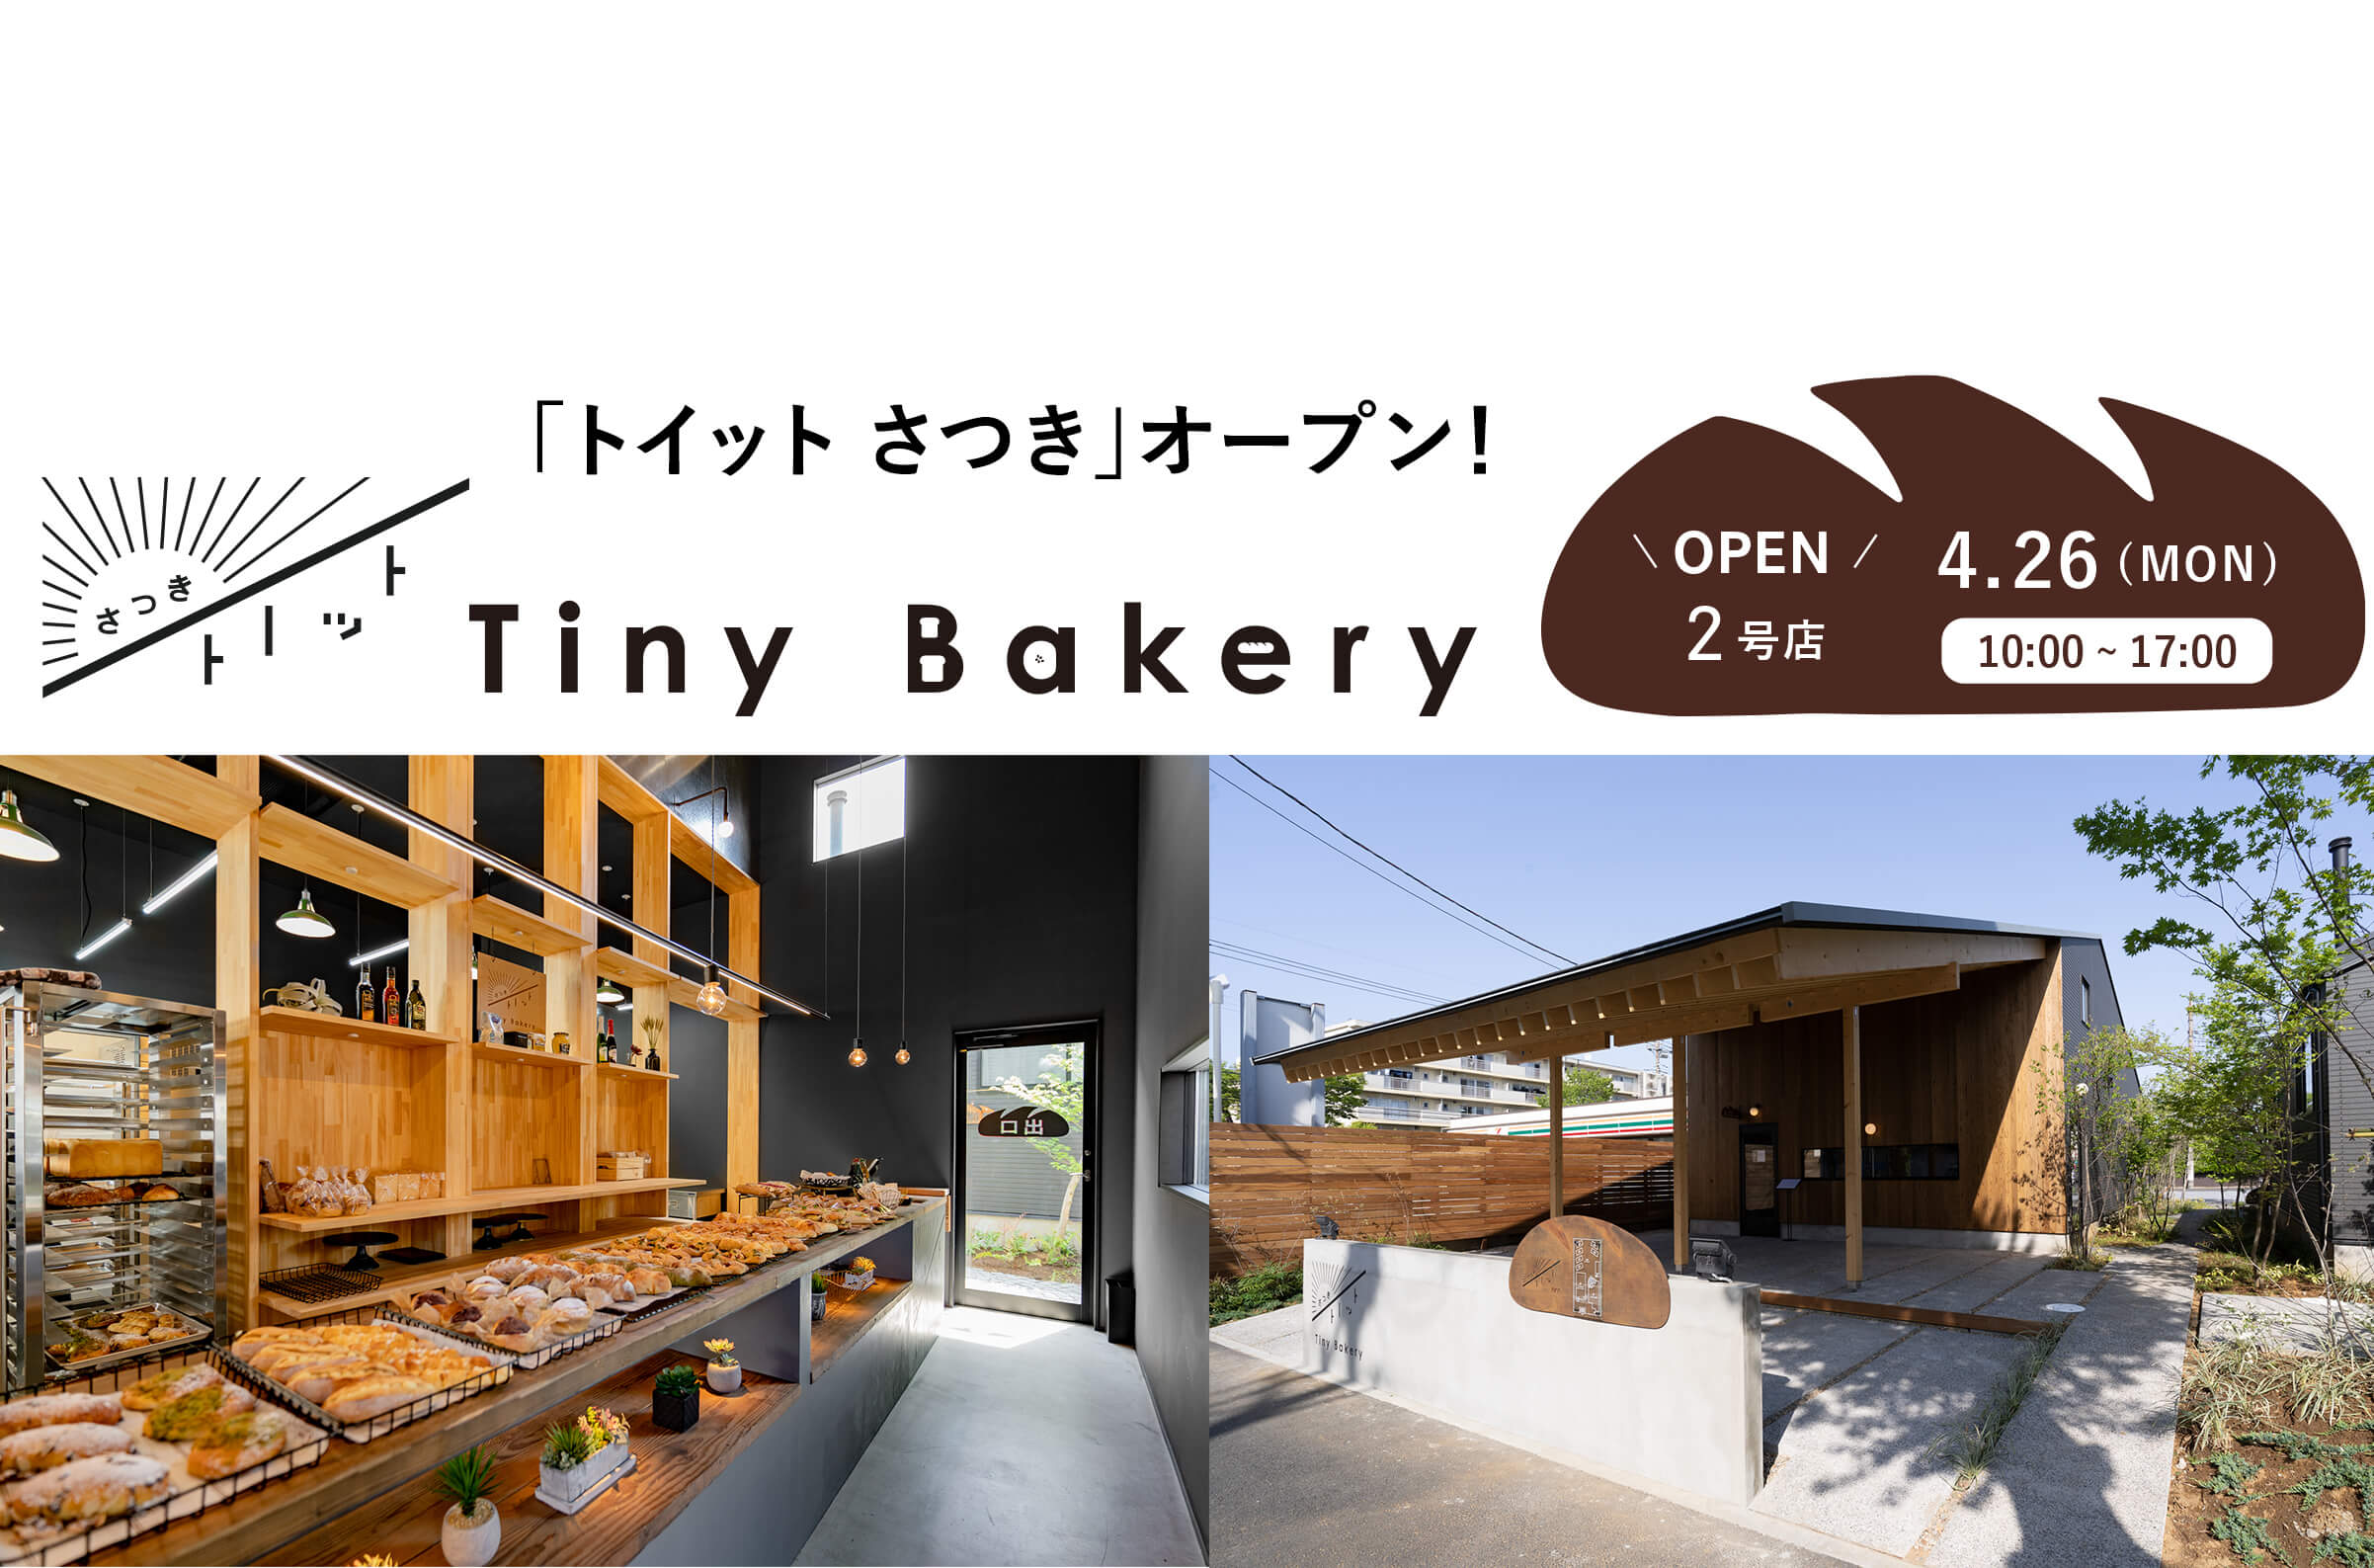 トイット 千葉県野田市の三角屋根の美味しいパン屋さん